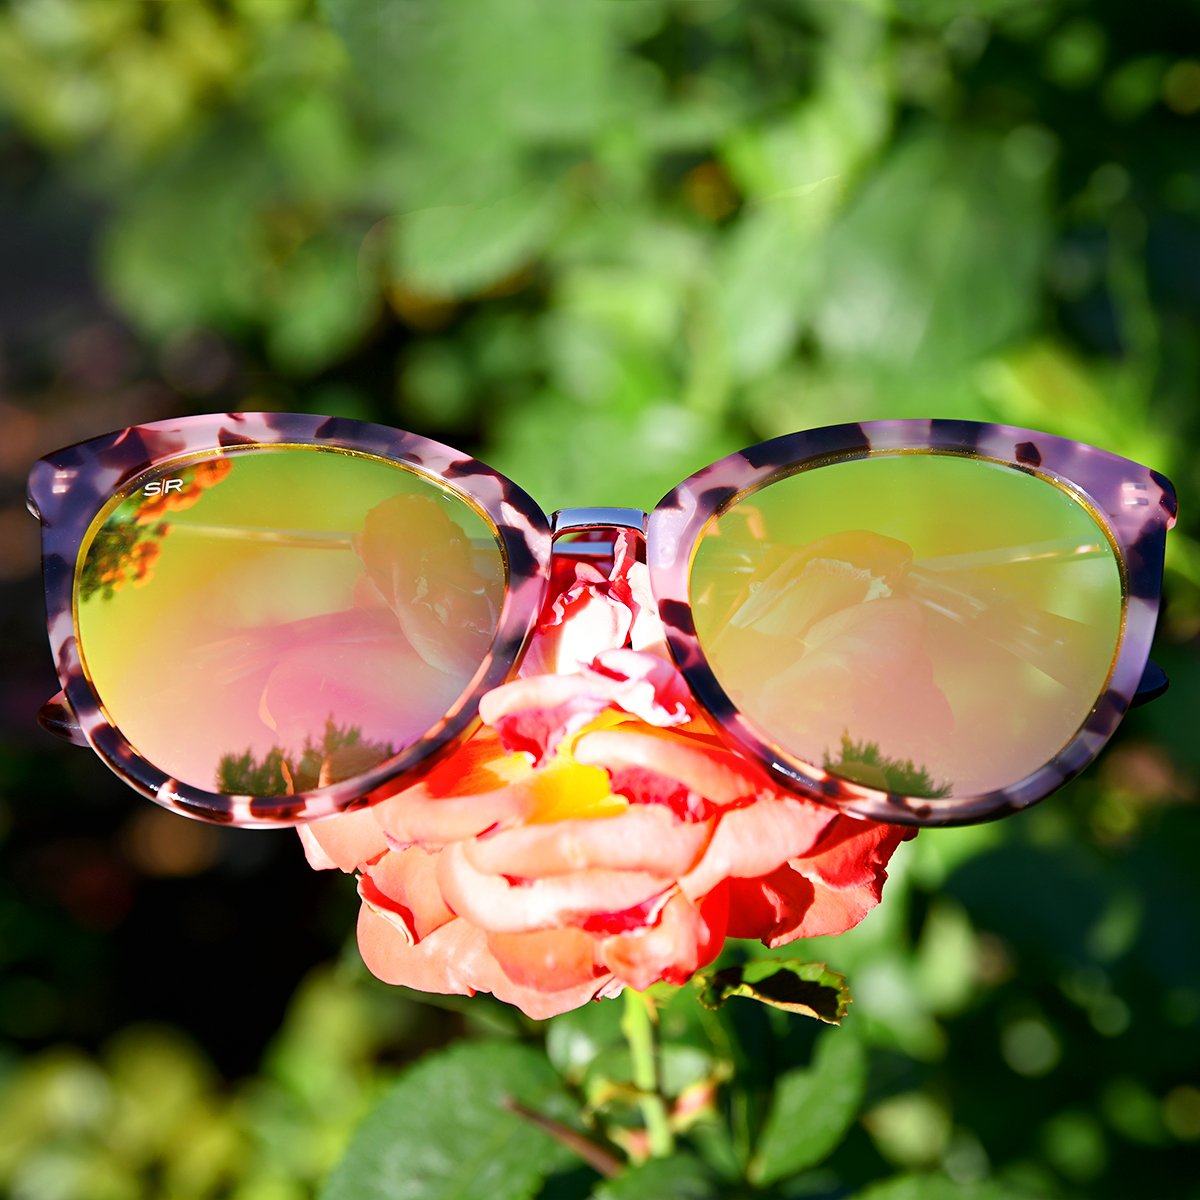 Lotus - Pink Tortoise Shady Rays® | Polarized Sunglasses 